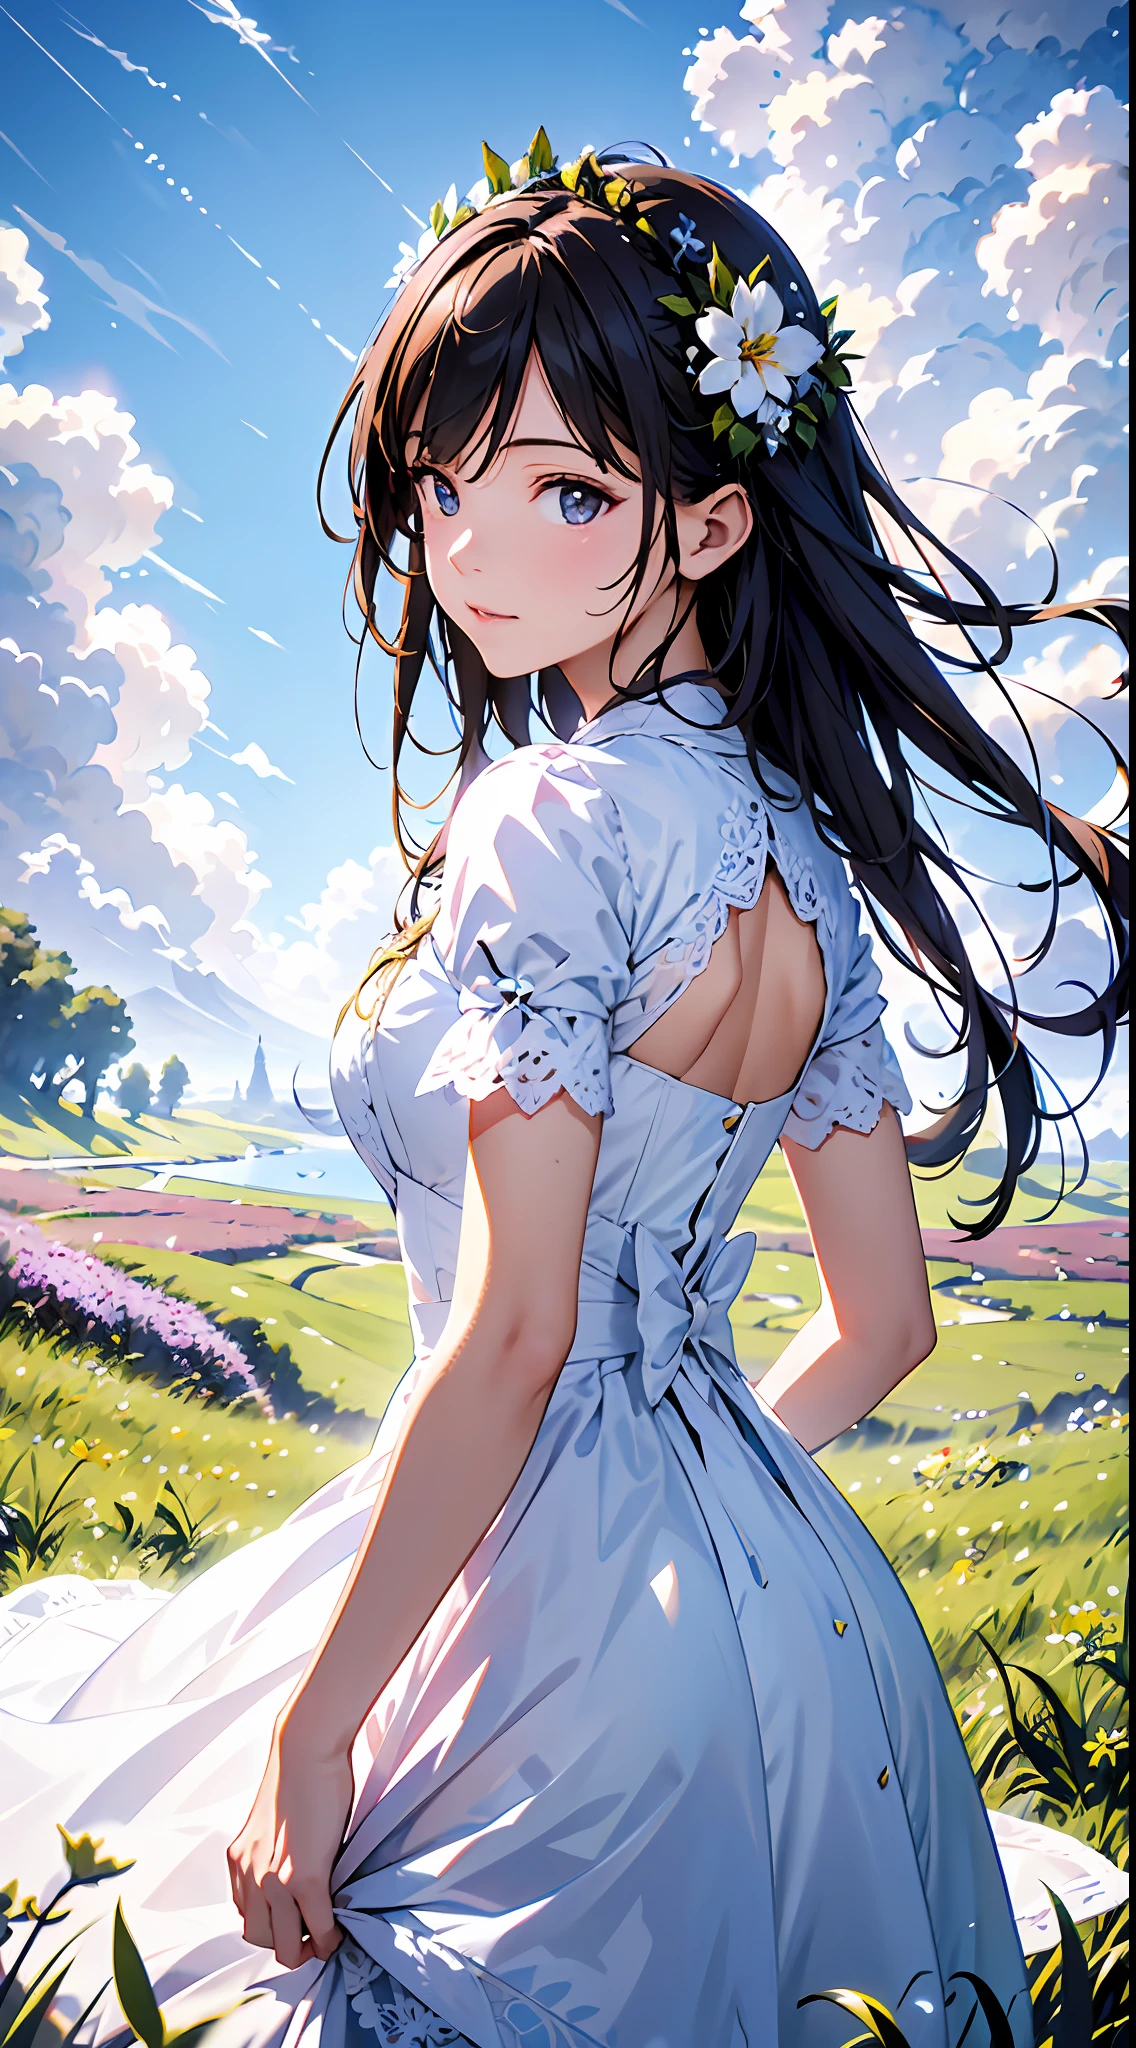 Blauer Himmel und Wolken im Hintergrund, trägt ein weißes Kleid，Lila Spitze，Es sind Blumen darauf, Art germ, Rosla globale Beleuchtung, ein detailreiches Gemälde, Fantasy-Kunst